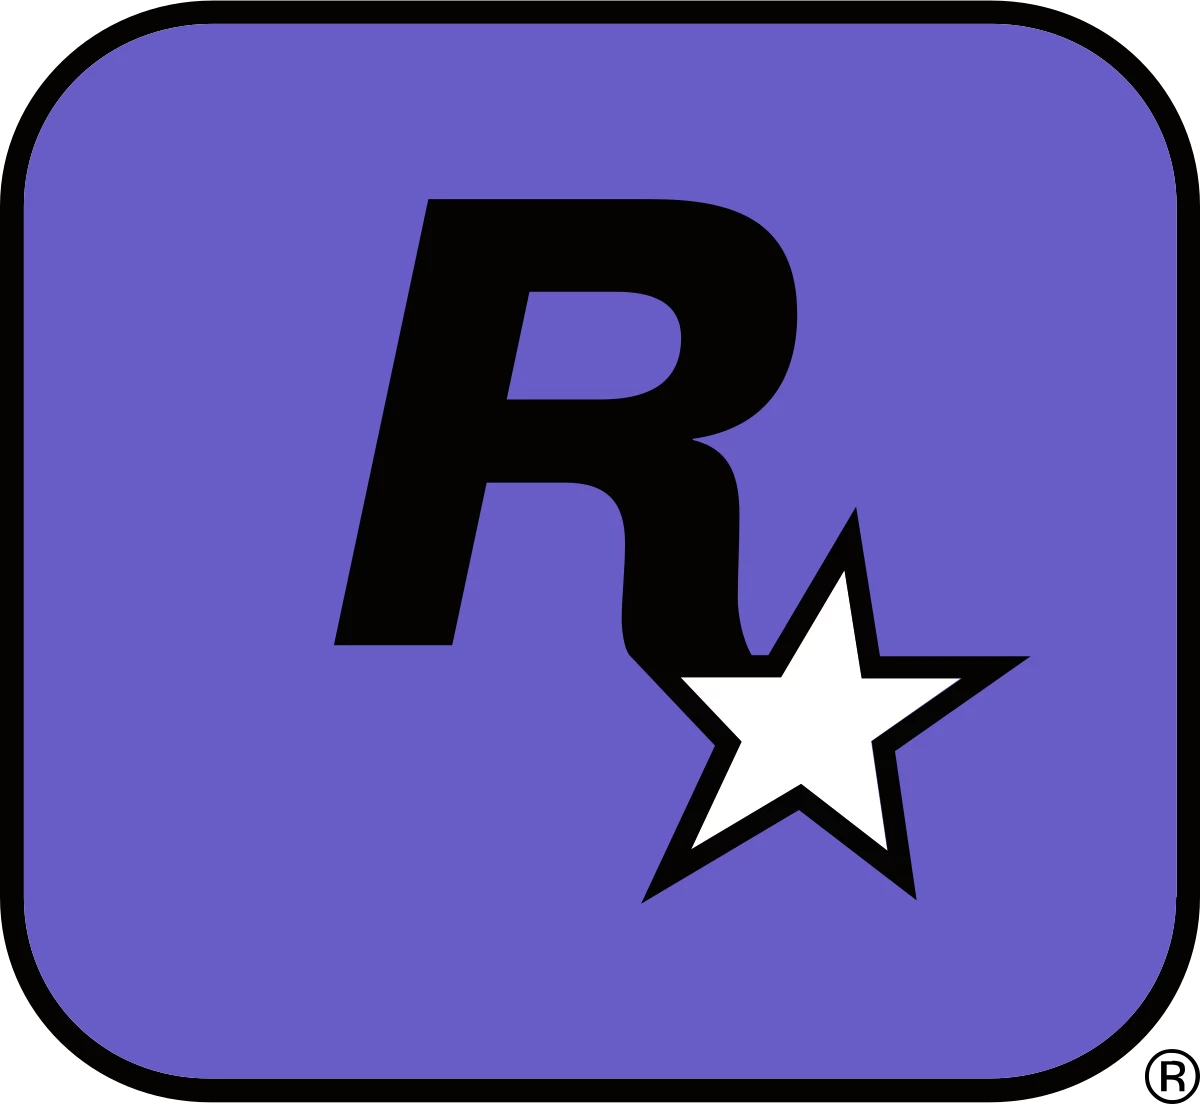 logo da desenvolvedora Rockstar San Diego